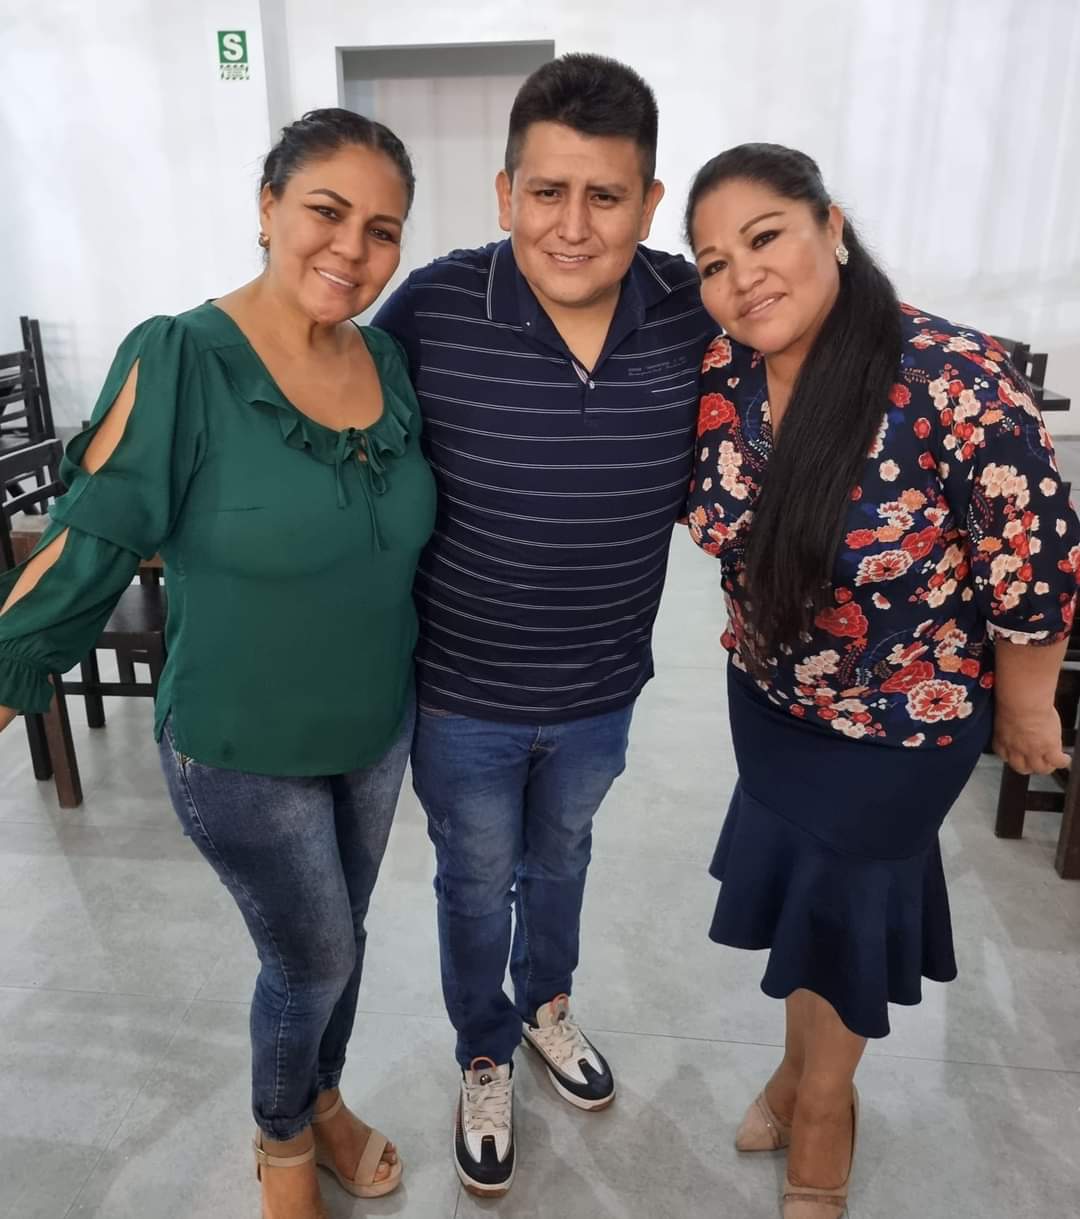 Delincuentes extorsionan a promotor de eventos en Trujillo